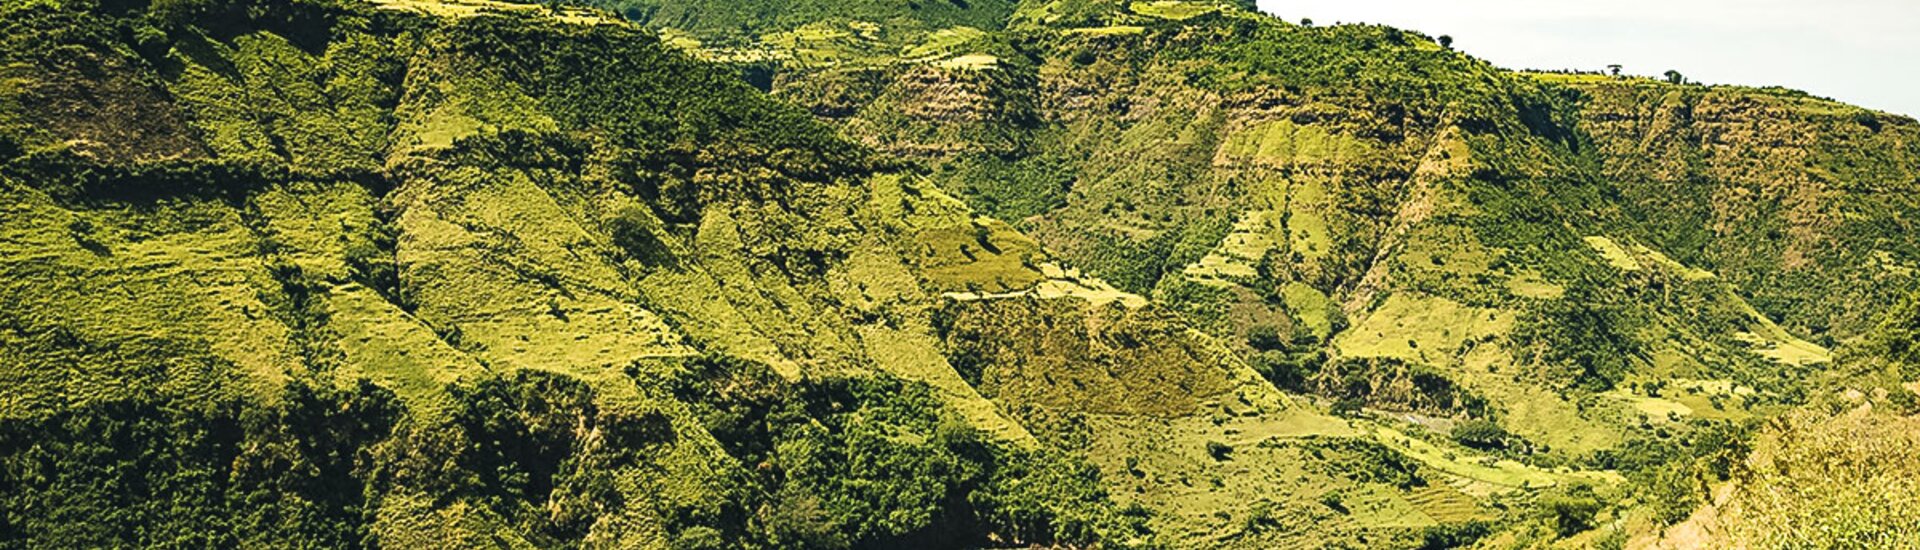 Simien Nationalpark in Äthiopien